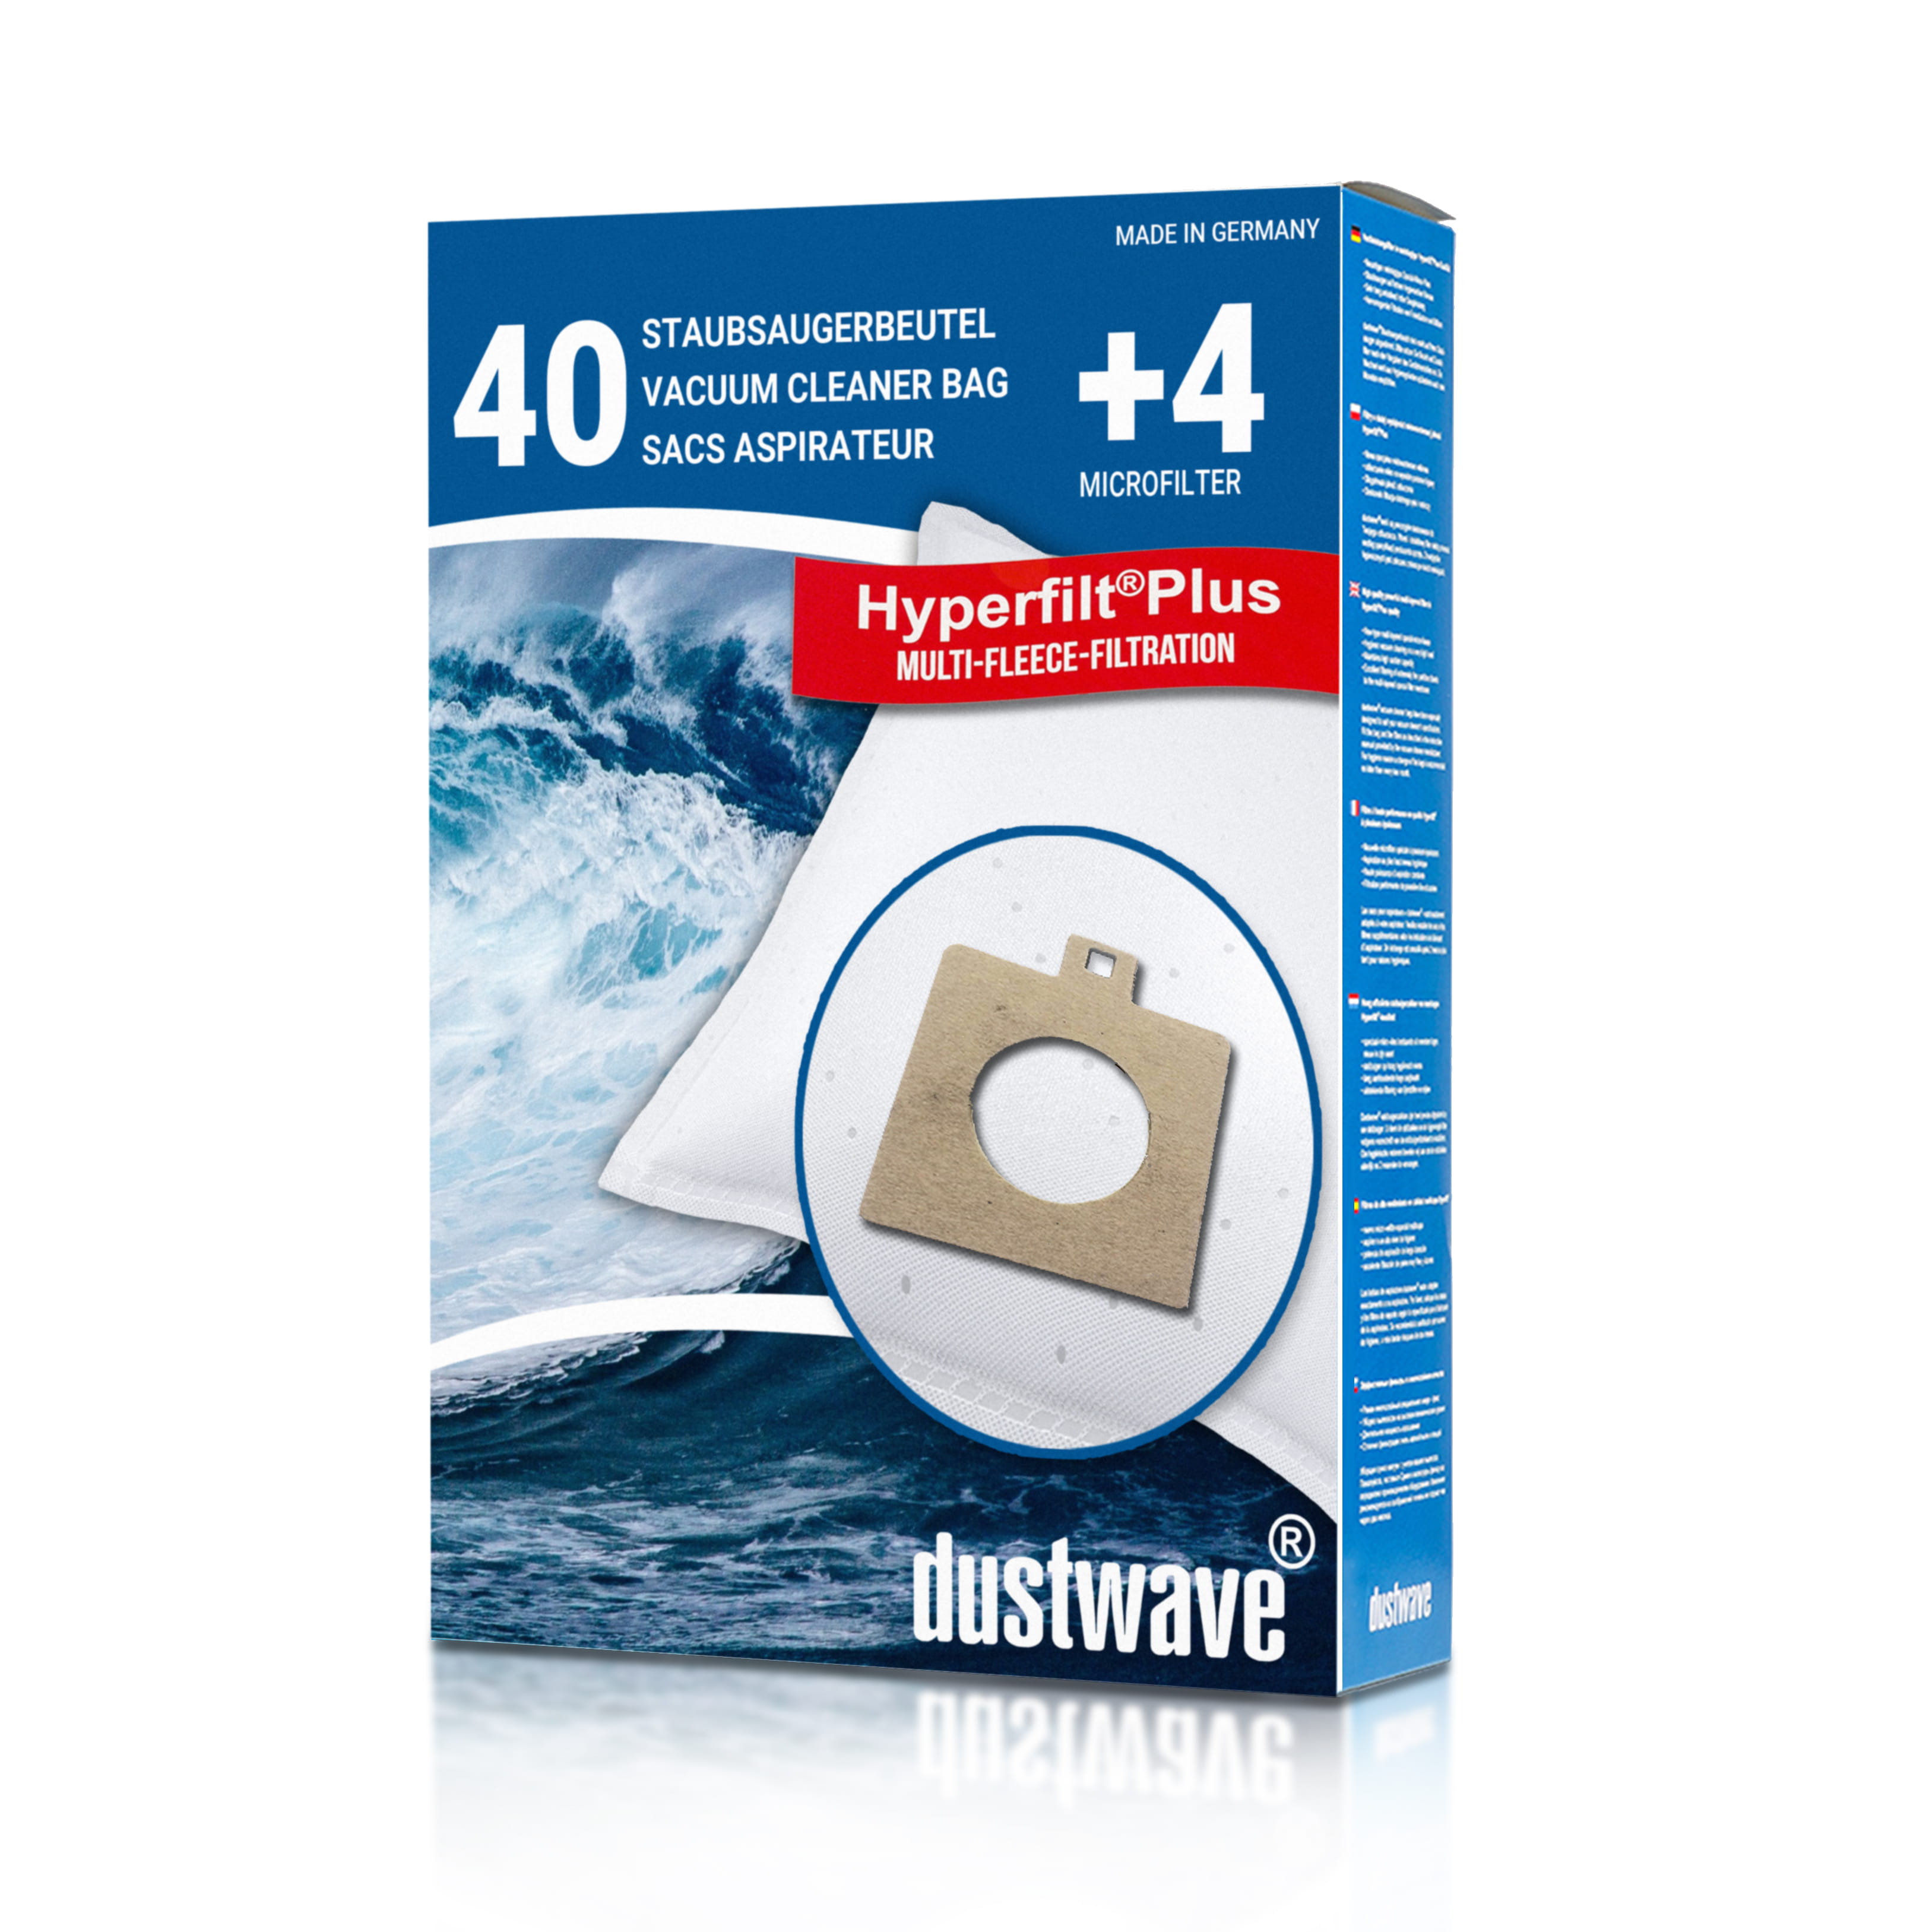 Dustwave® 40 Staubsaugerbeutel für AEG Smart 460 - hocheffizient mit Hygieneverschluss - Made in Germany